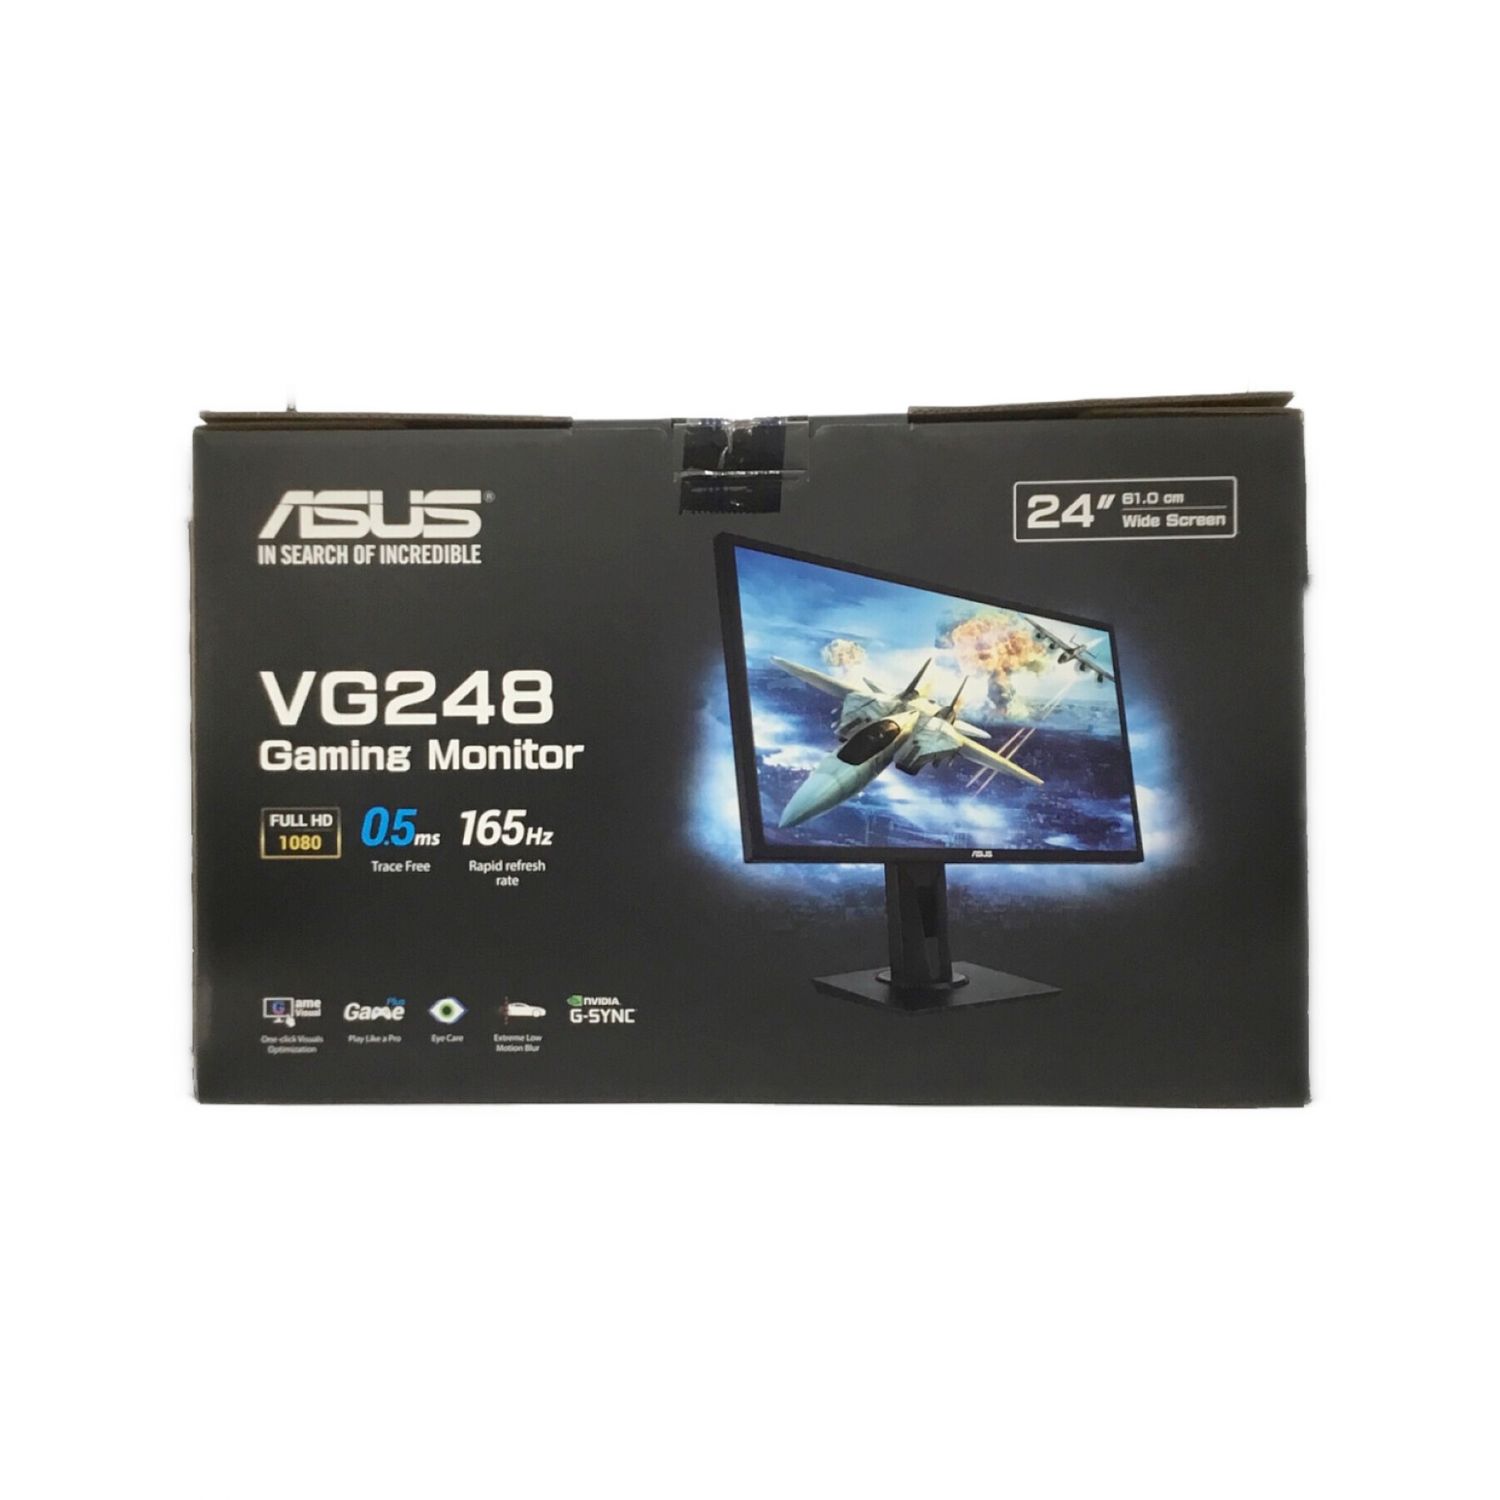 ASUS (エイスース) ゲーミングモニター VG248 24インチ TN方式 